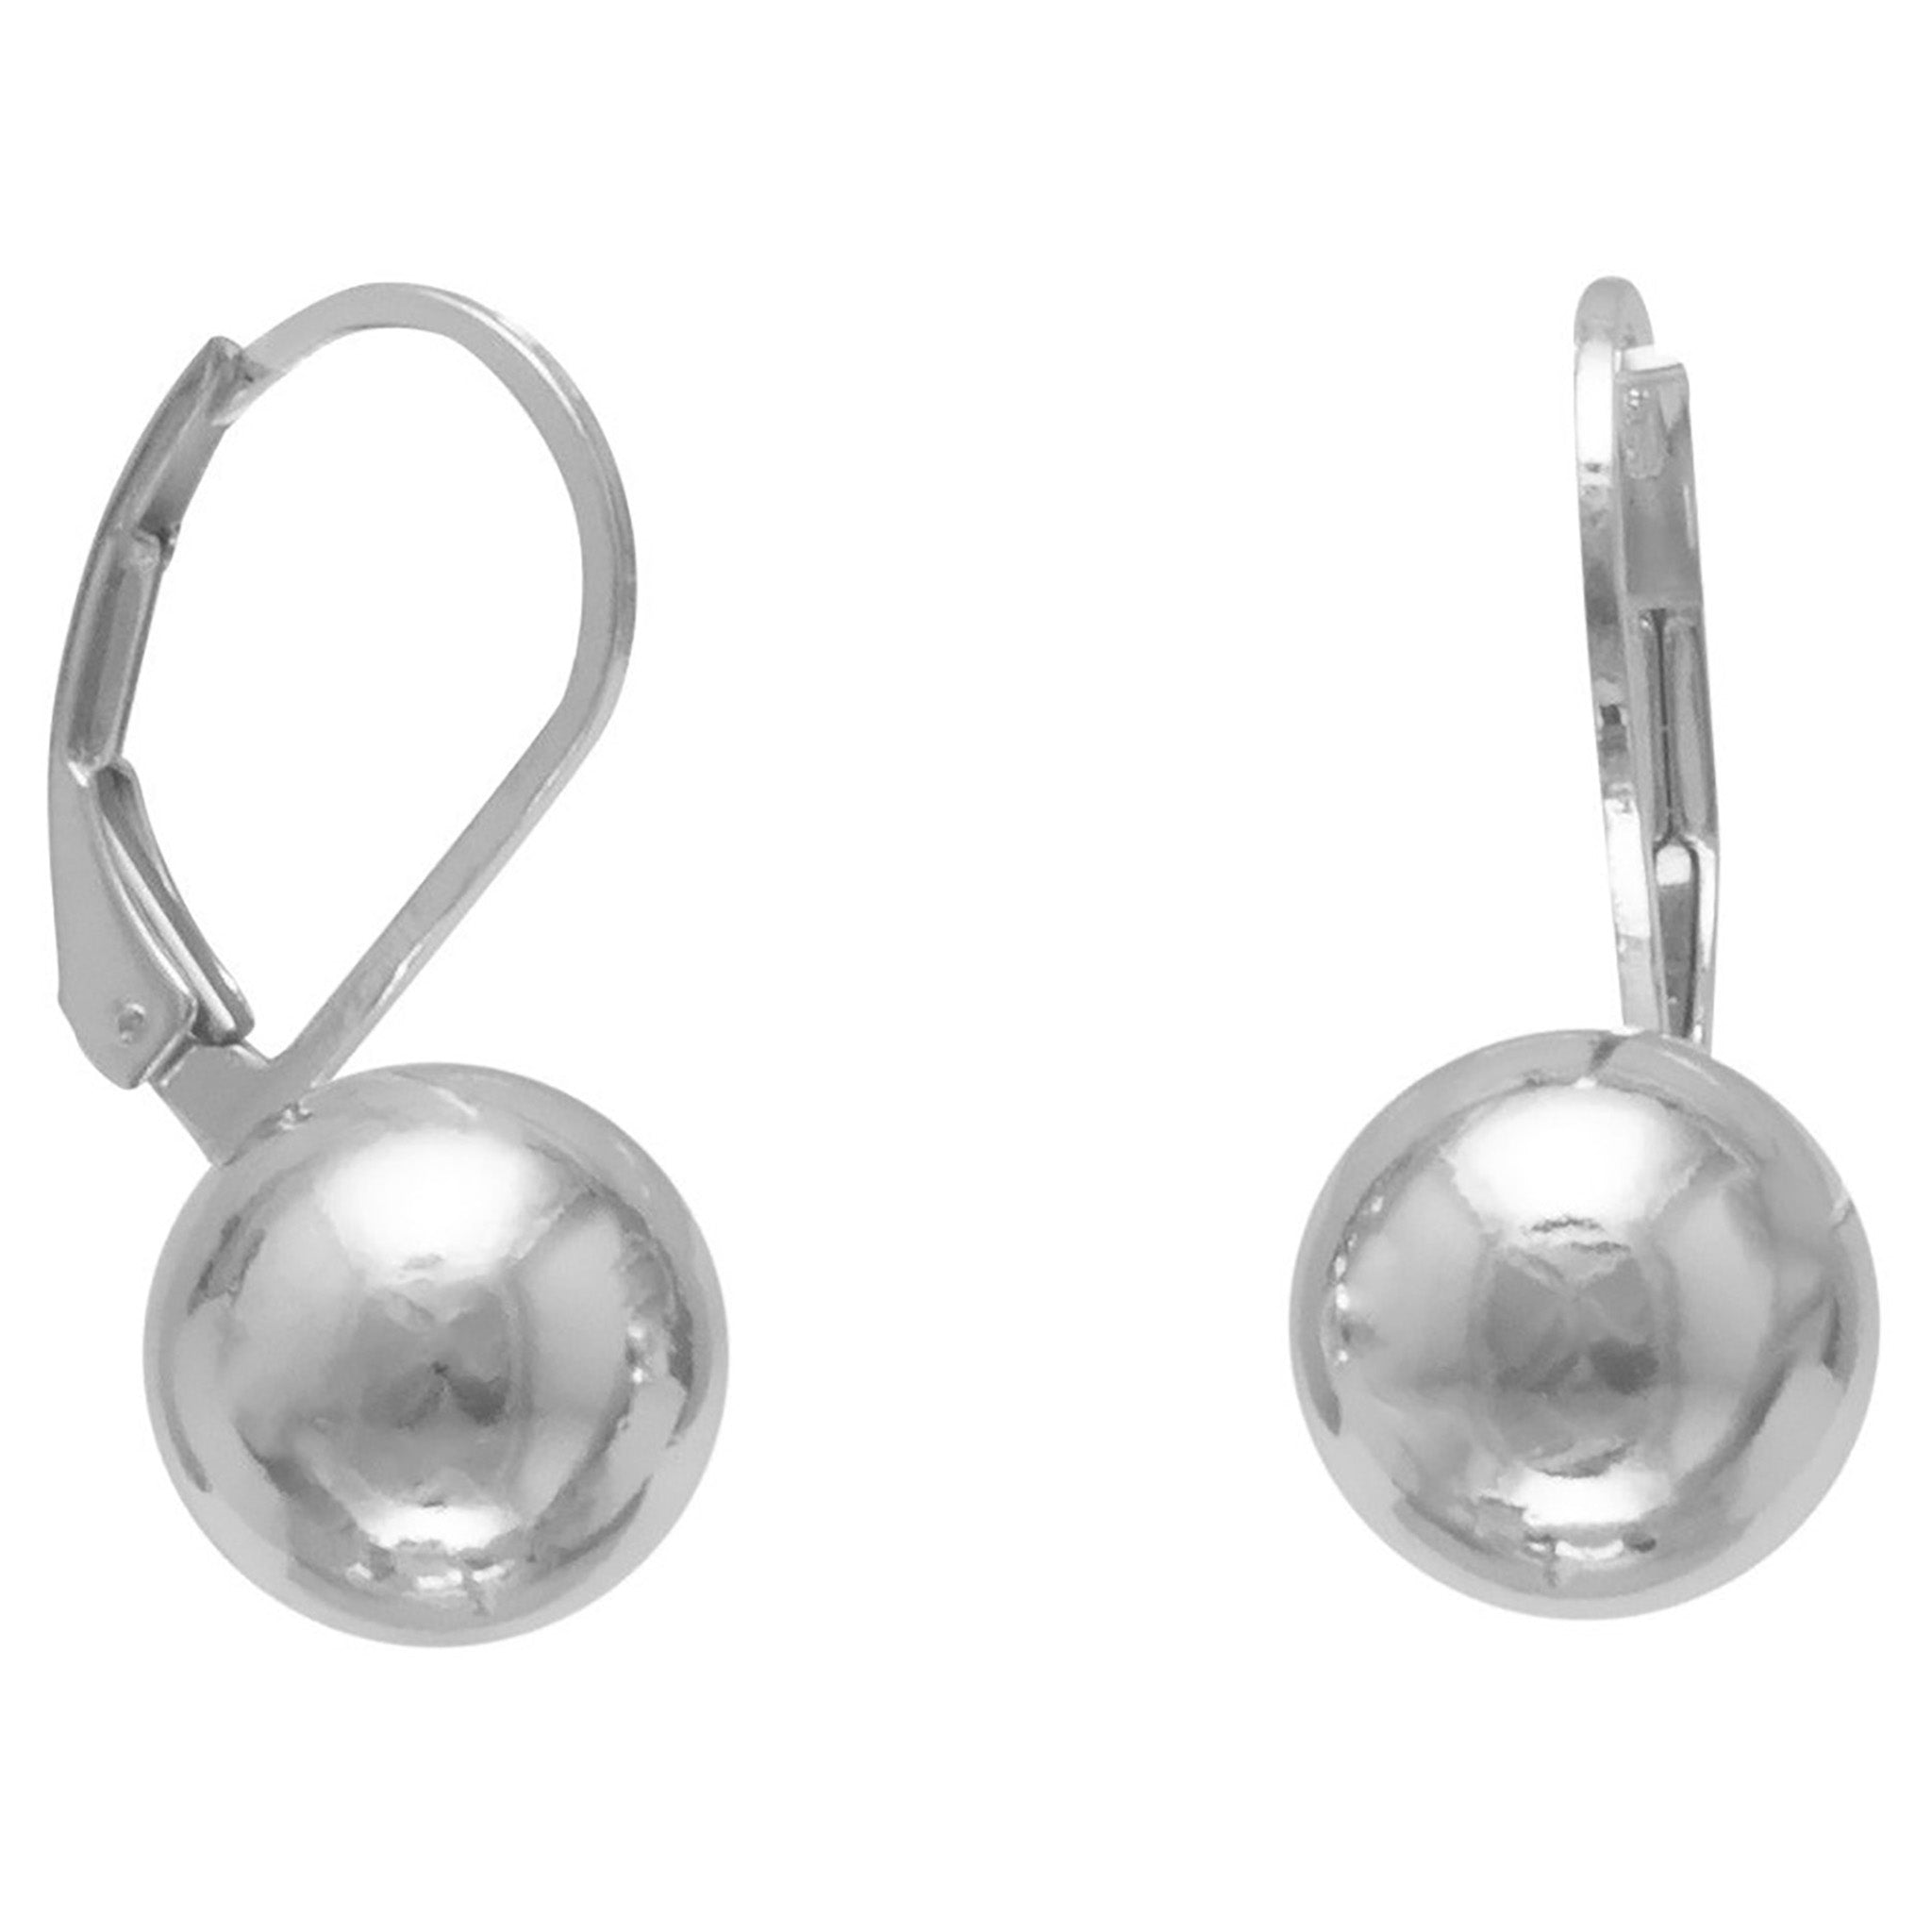 10mm Silver Ball Earrings